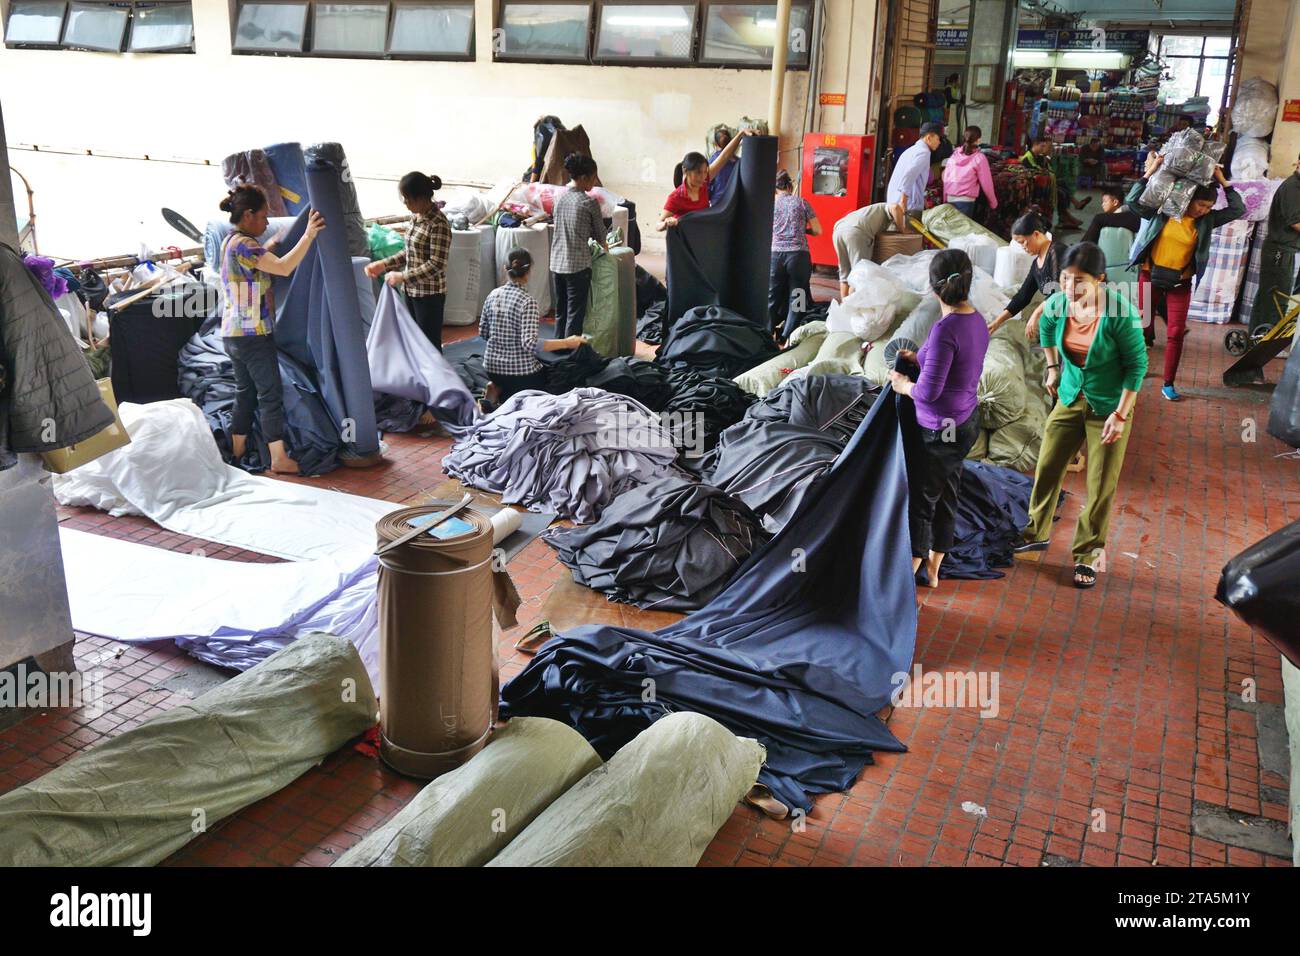 Les travailleurs mesurent d'énormes rouleaux de tissu sur un marché de gros textile à Hanoi, Vietnam. Les bobines massives de tissu sont réduites à une taille plus gérable Banque D'Images